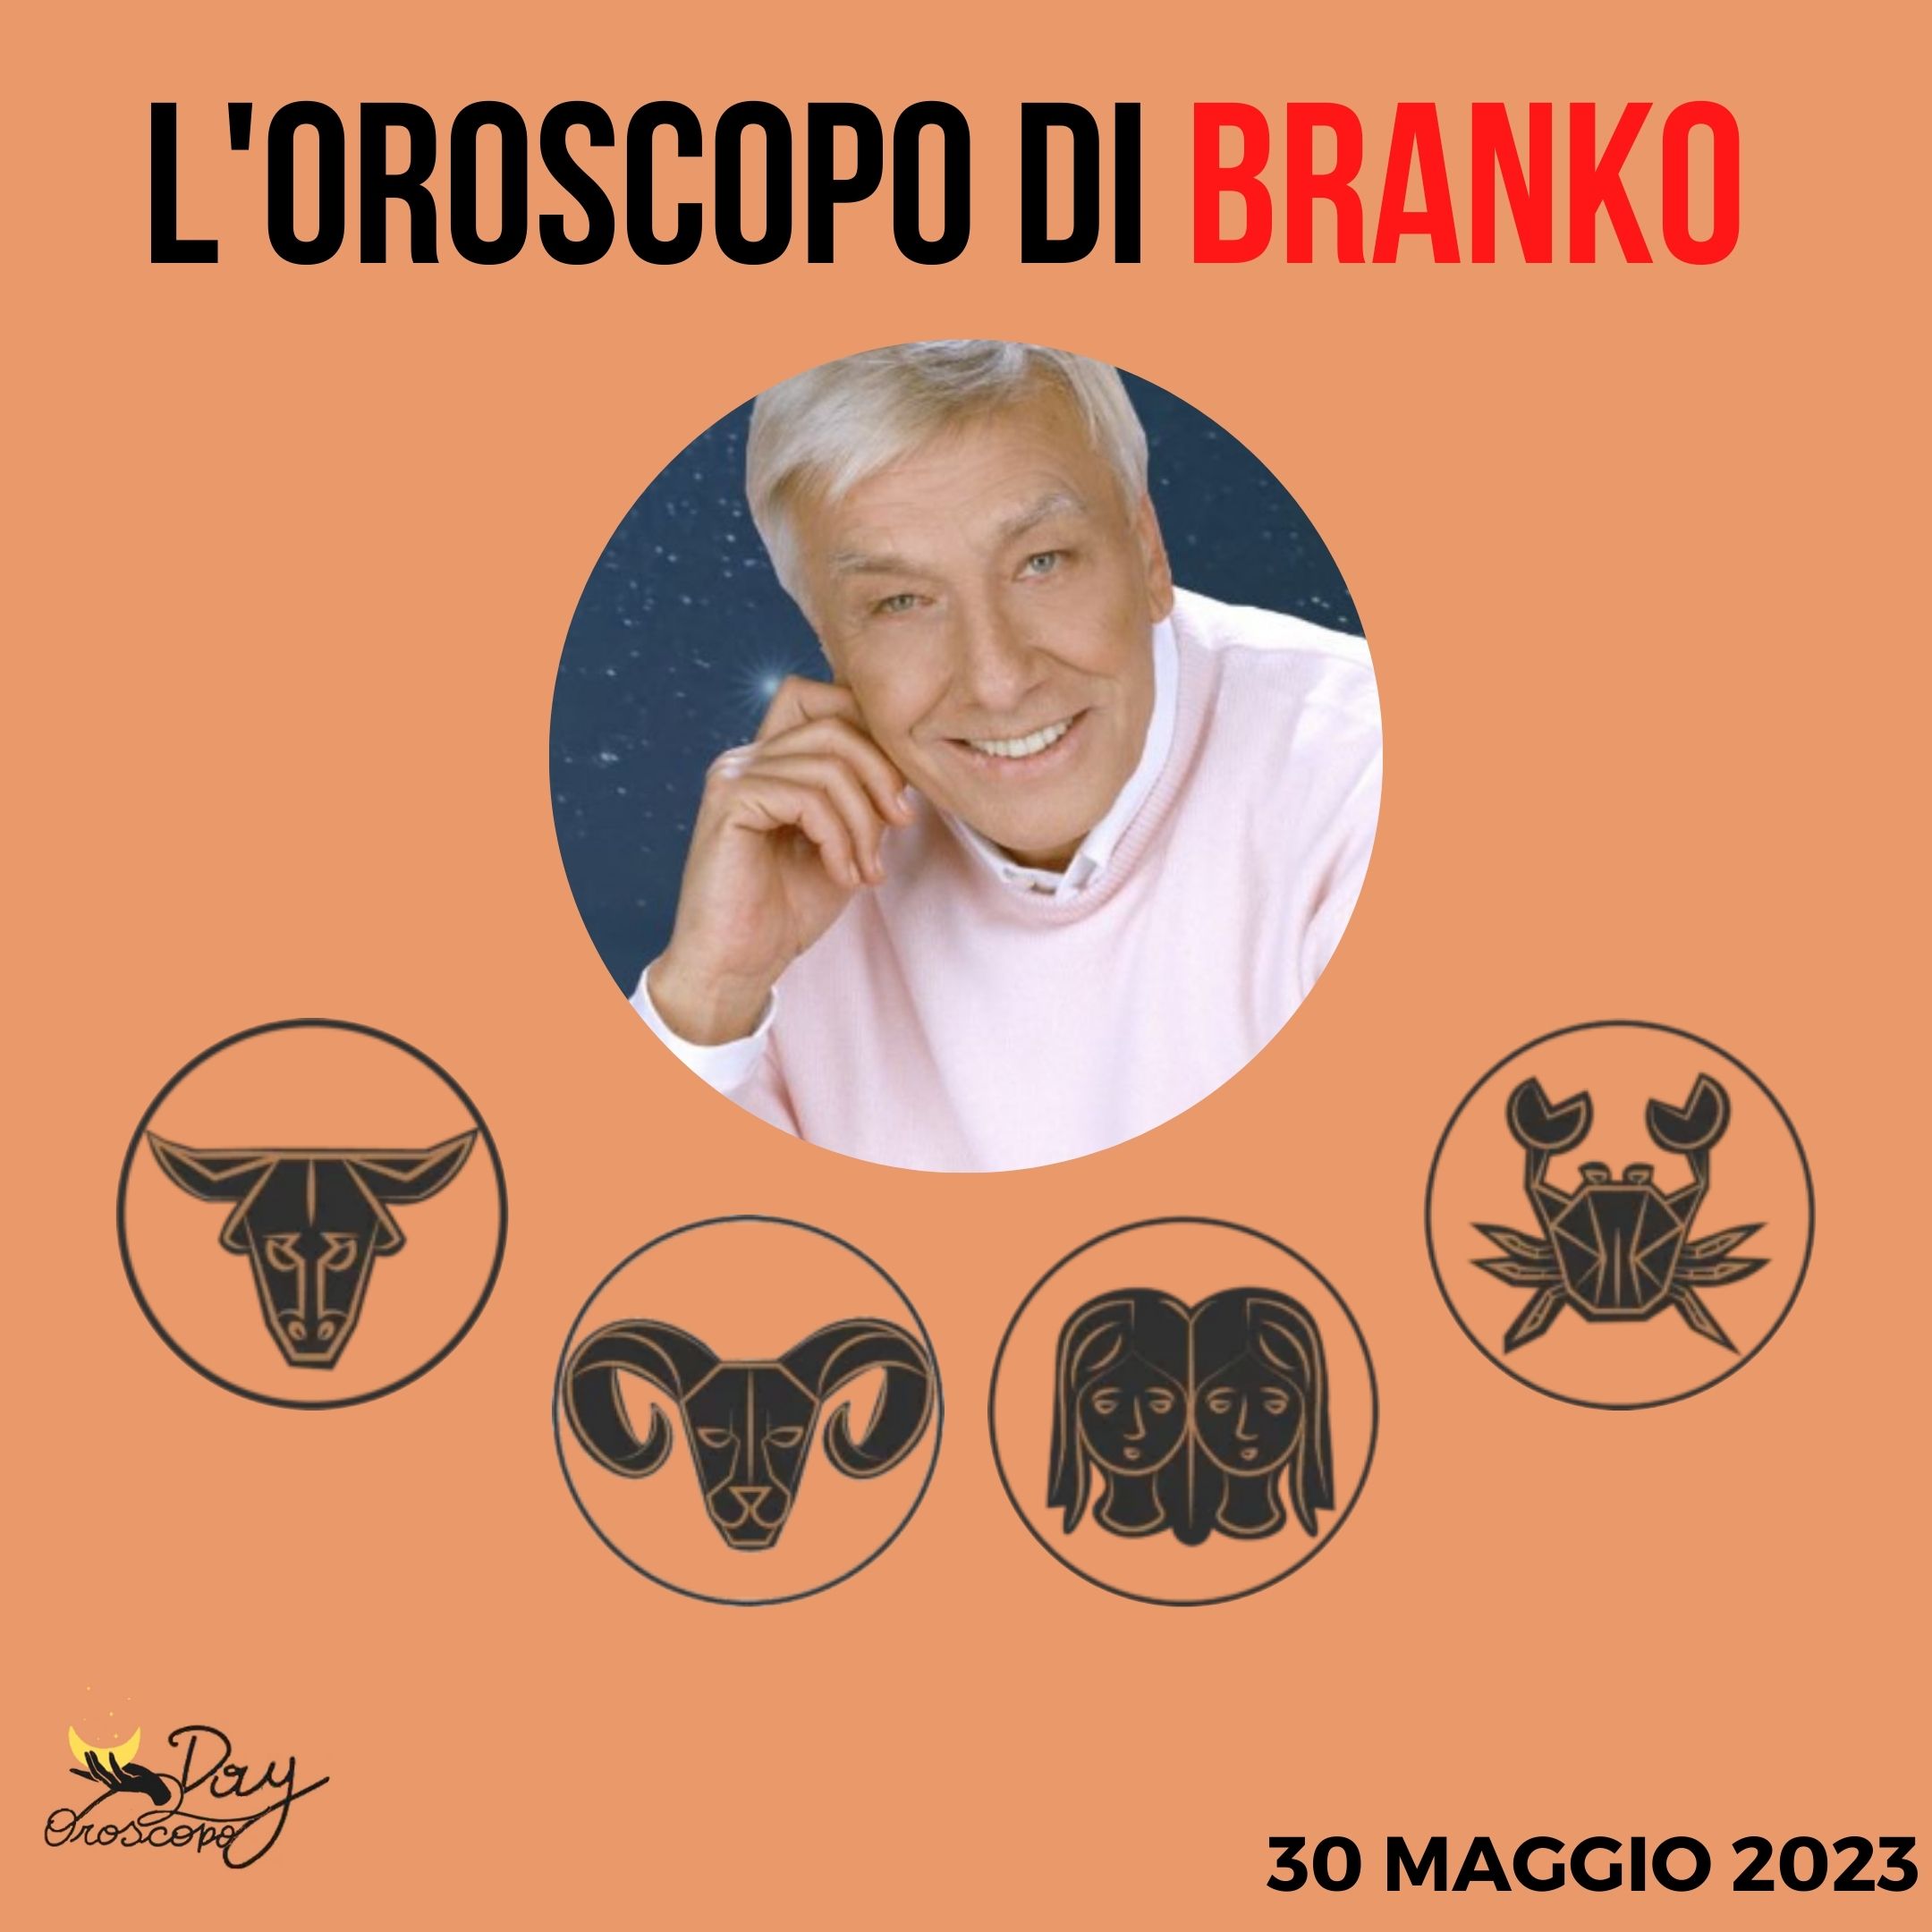 Oroscopo oggi domani Branko 30 maggio Toro Ariete Gemelli Cancro